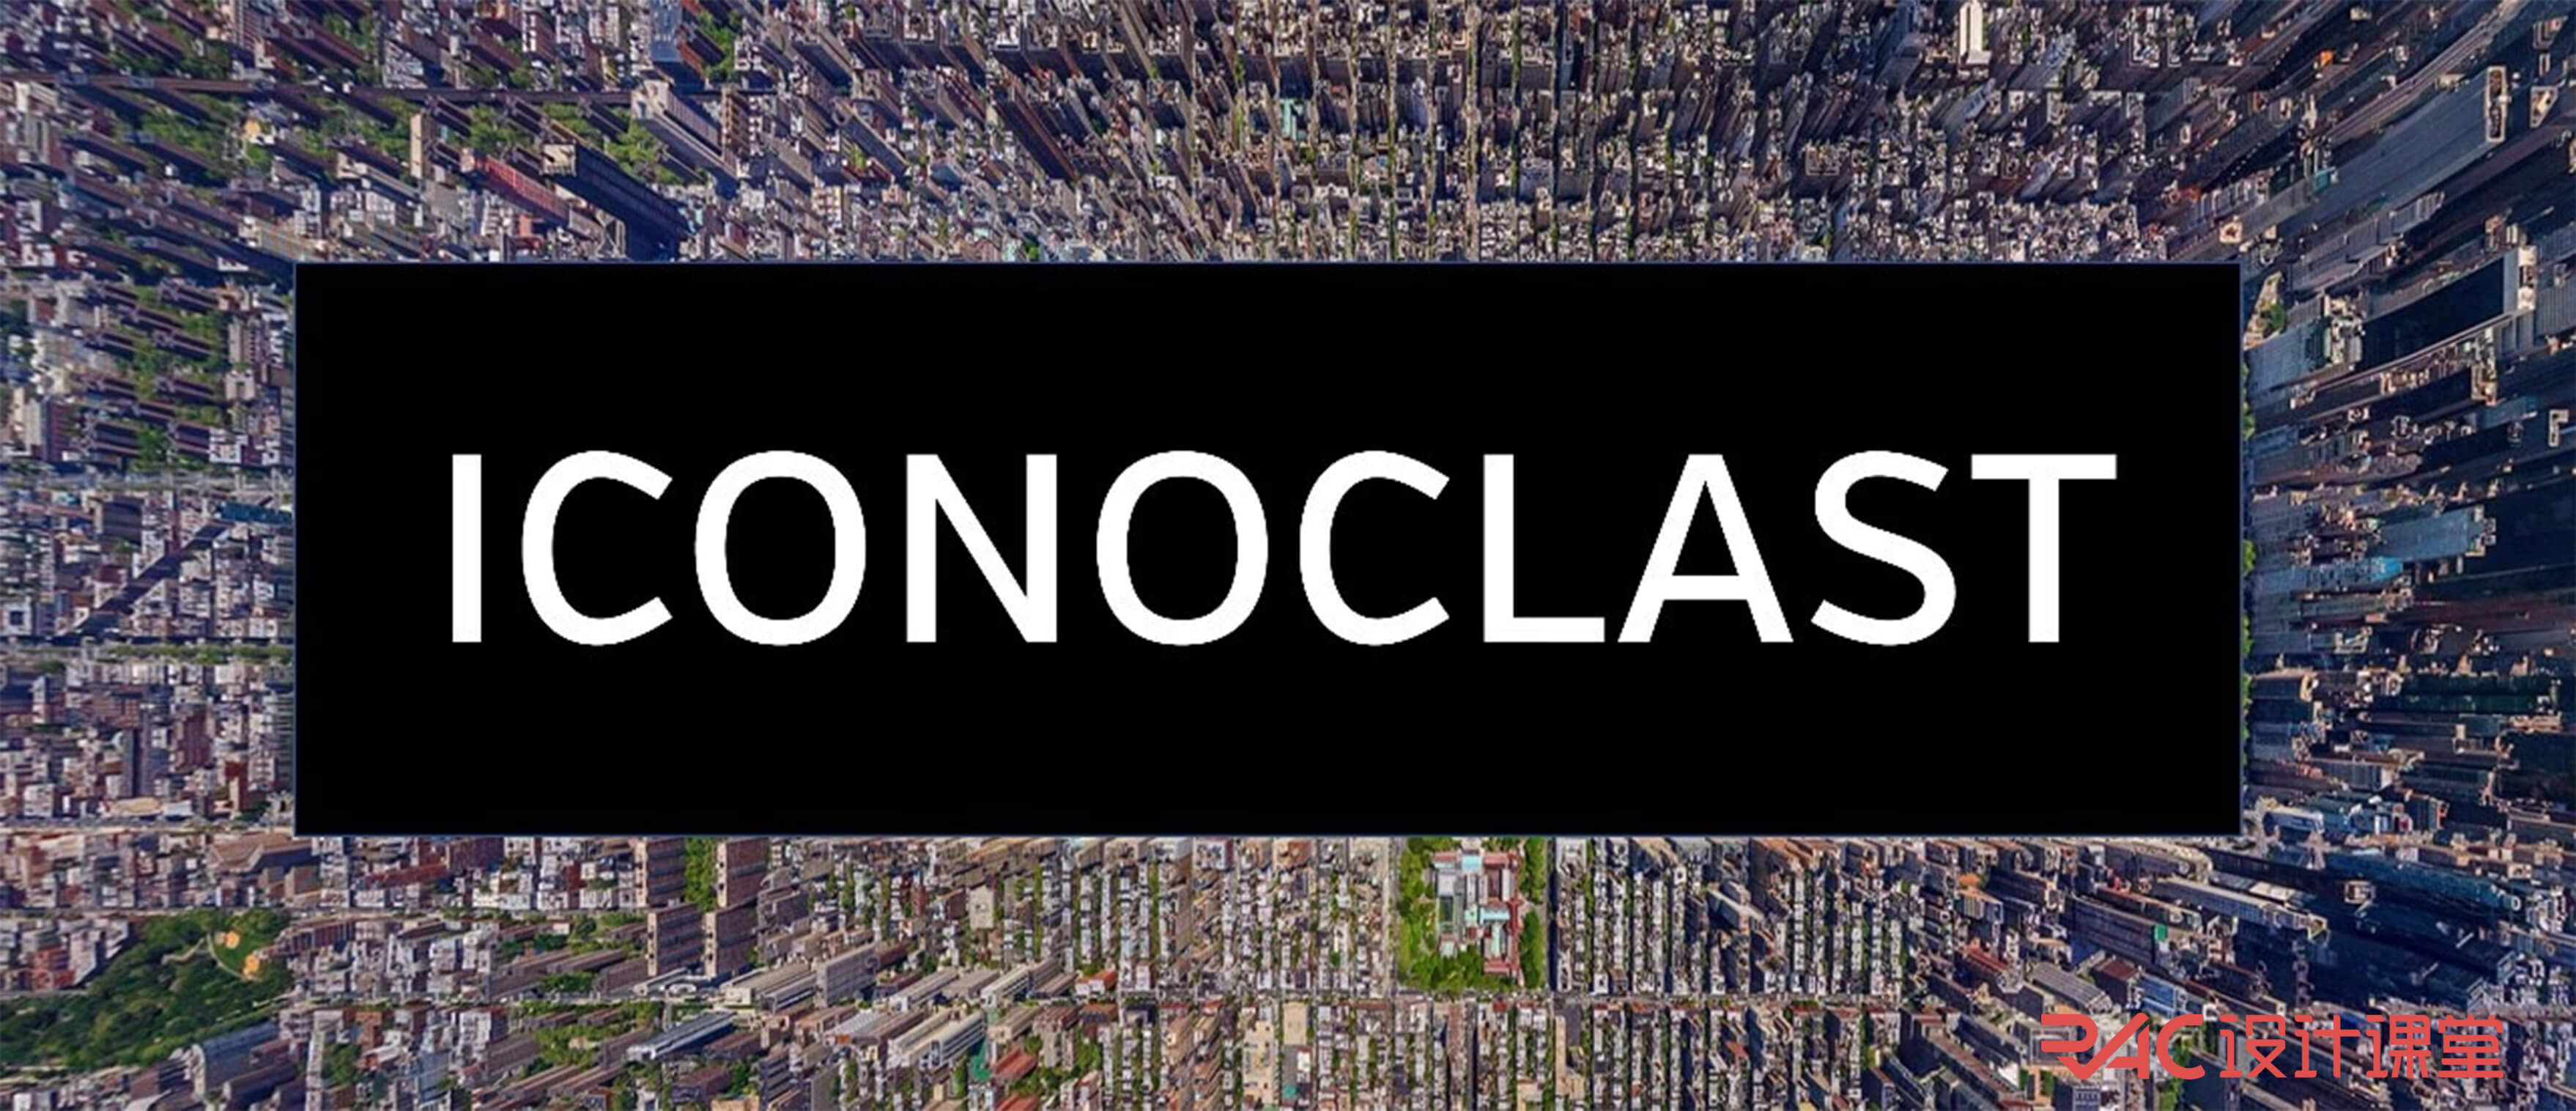 2018 studio25 la iconoclast/纽约中央公园重生景观设计竞赛